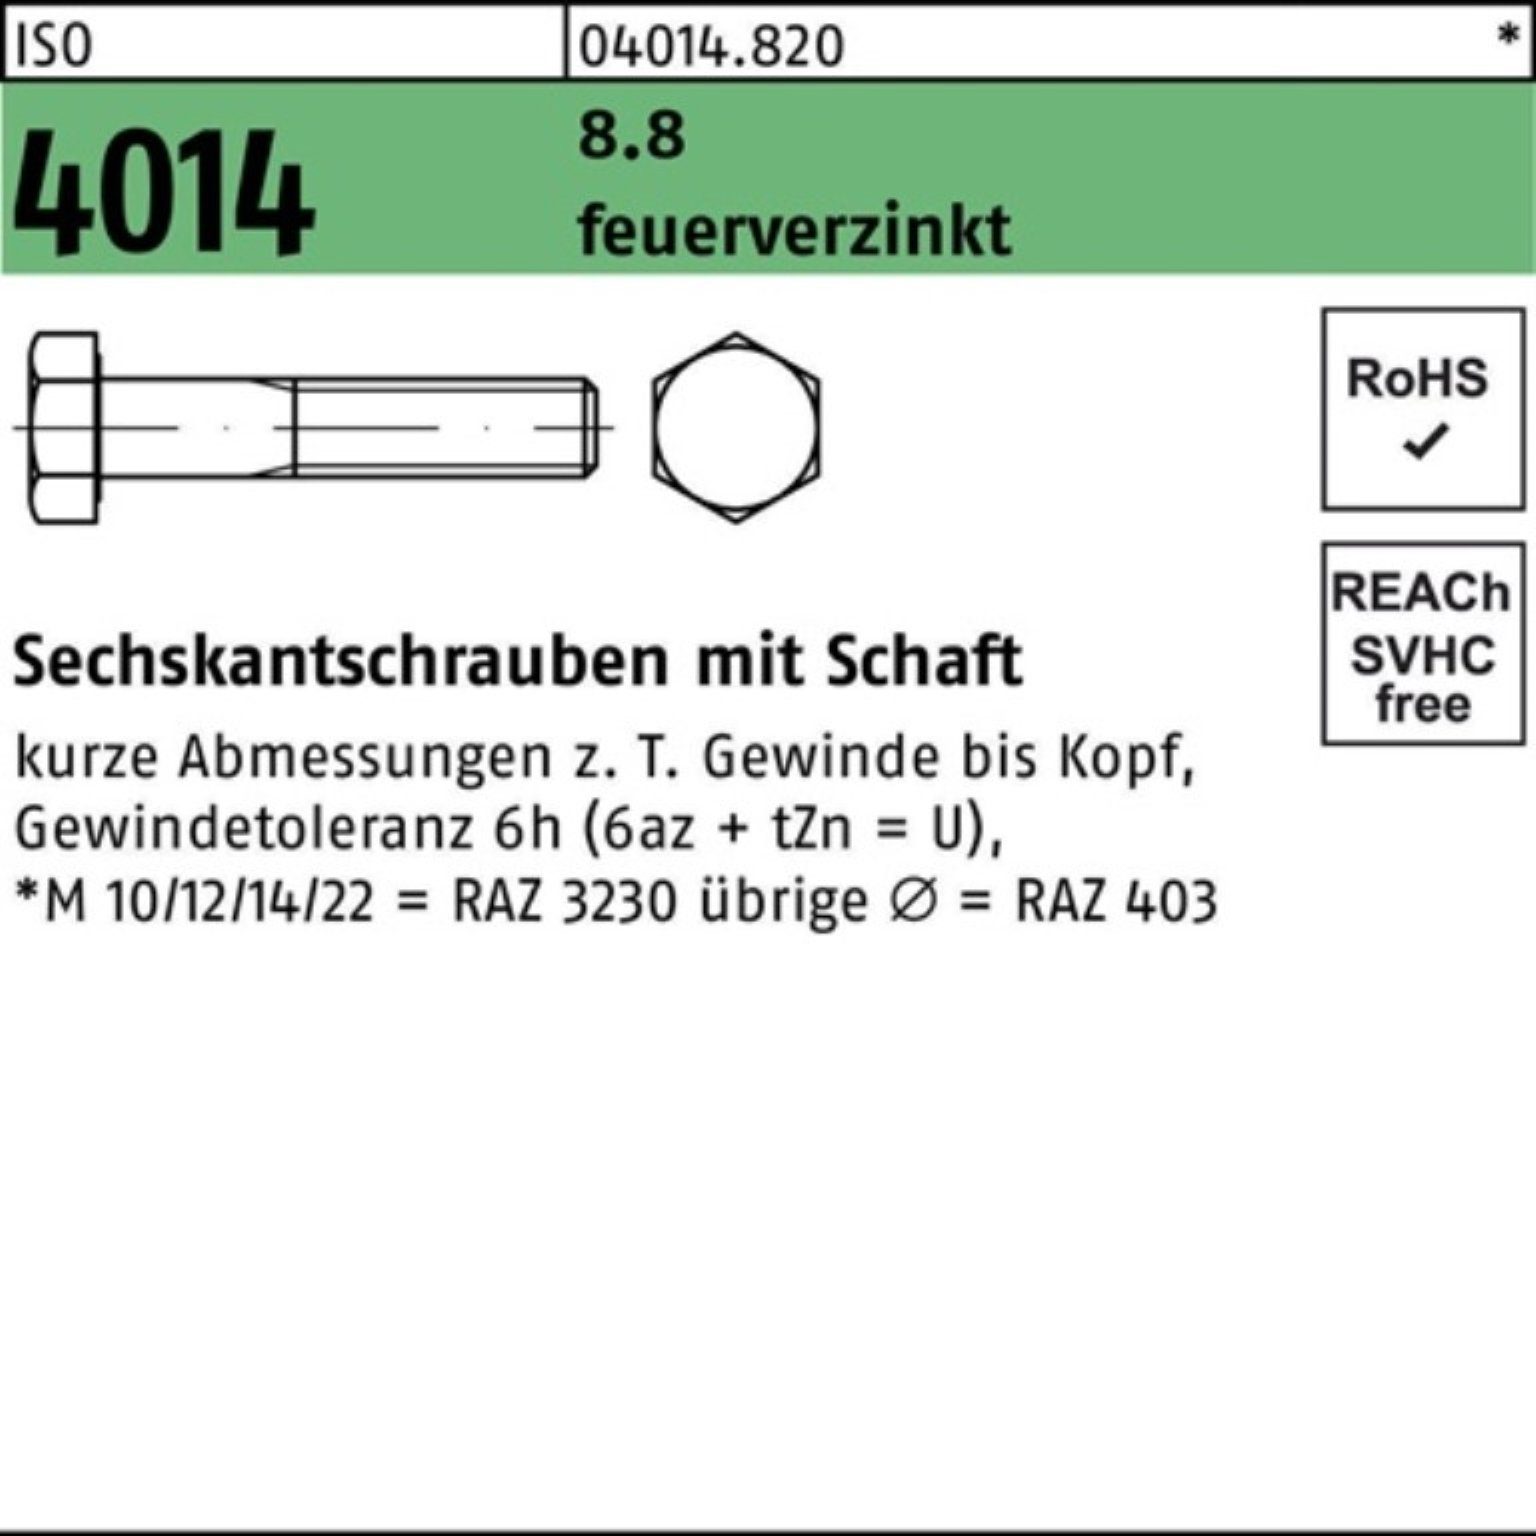 Bufab Sechskantschraube 100er Pack Sechskantschraube ISO 4014 Schaft M24x 90 8.8 feuerverz. 10